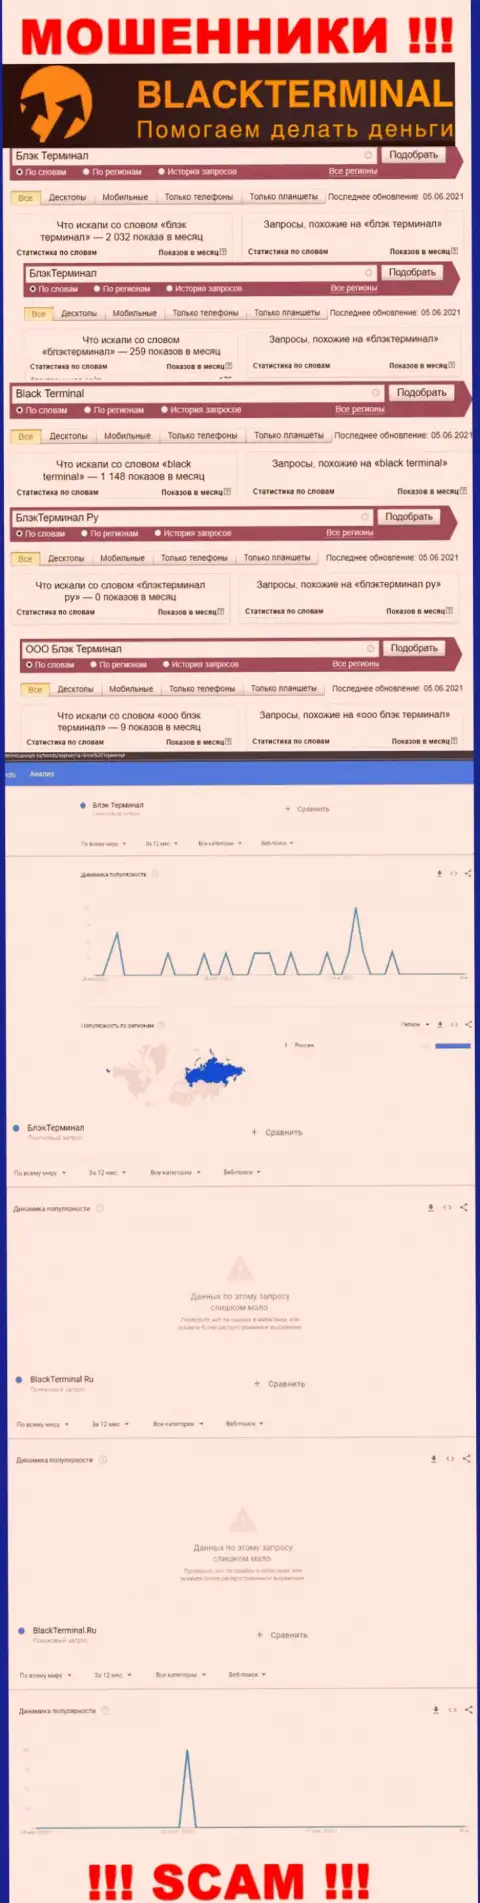 Количество поисковых запросов данных об мошенниках BlackTerminal Ru в сети интернет